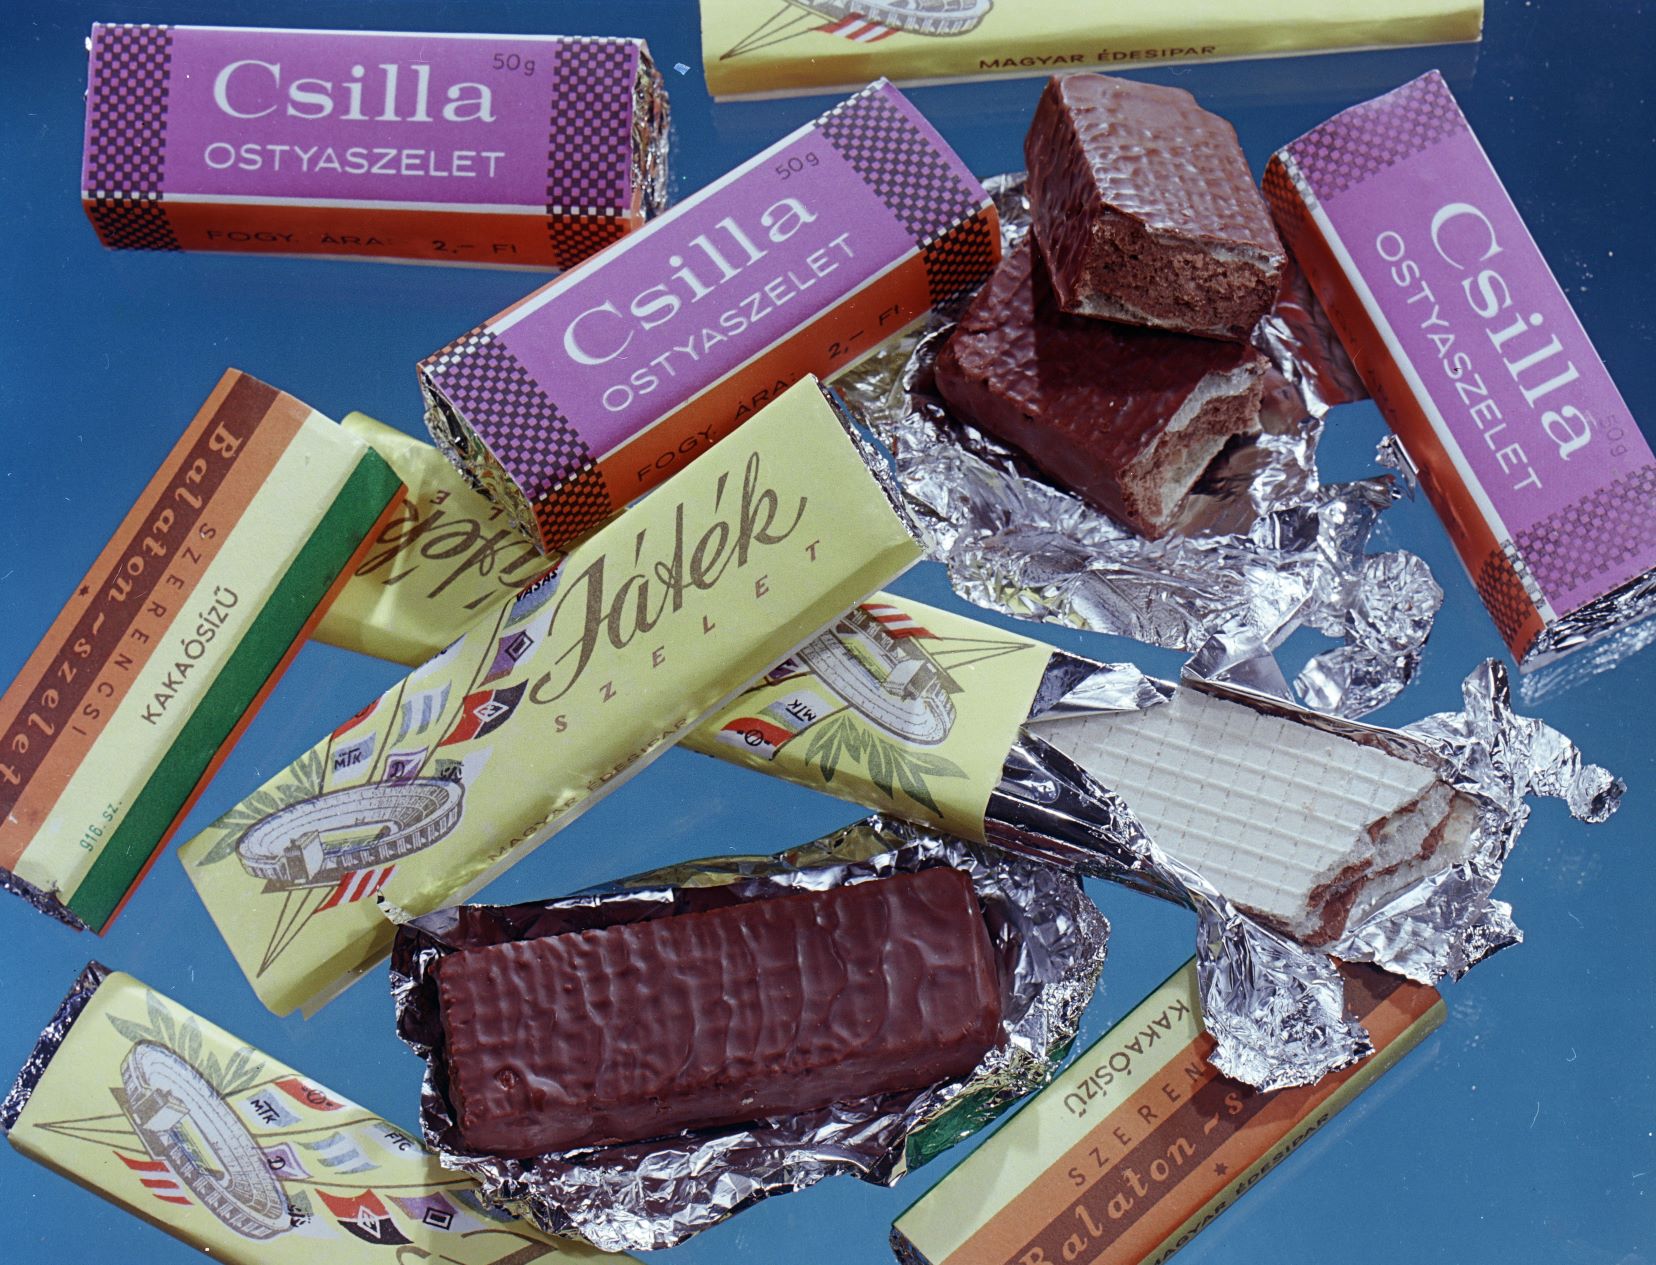 Csokoládék reklámfotója 1967-ben